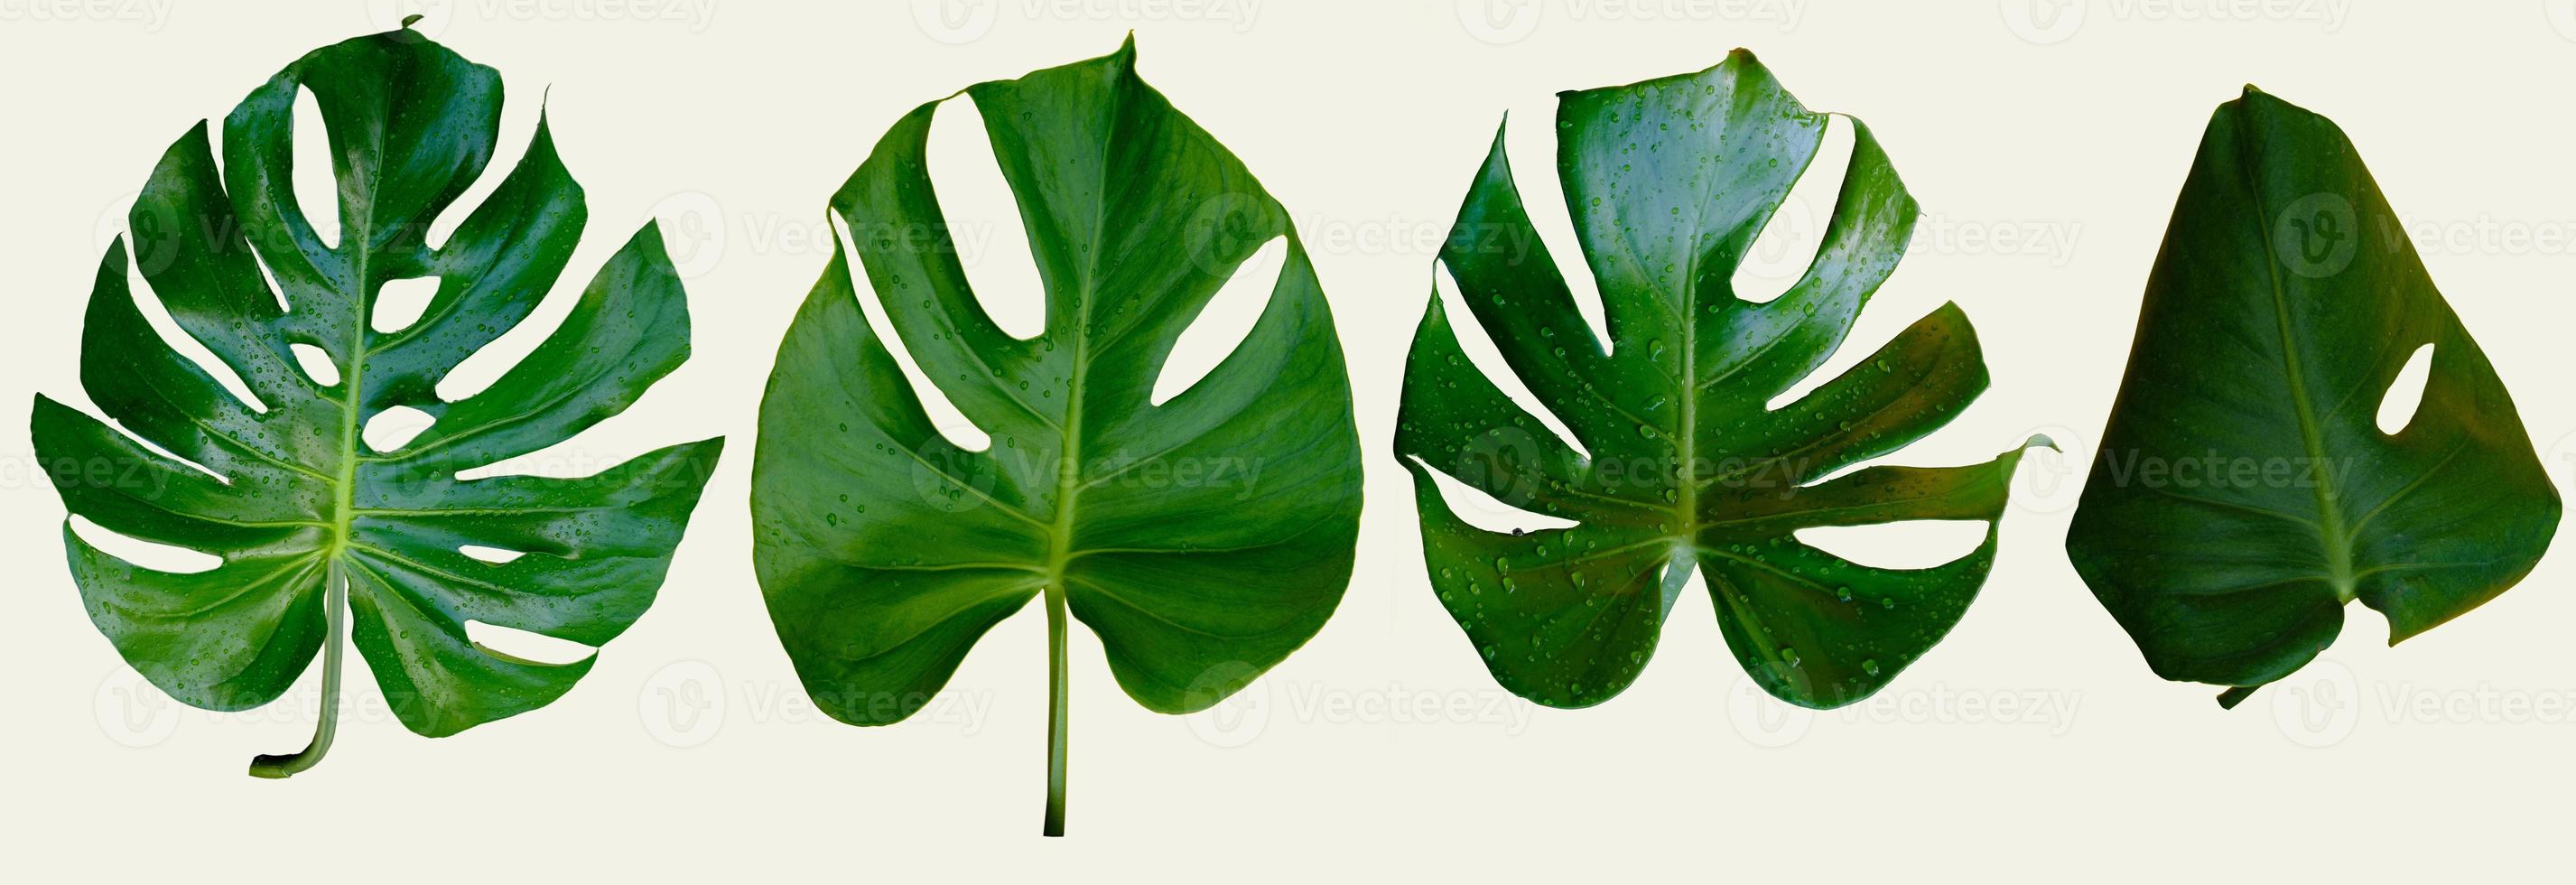 foglie di piante monstera isolate su sfondo grigio foto